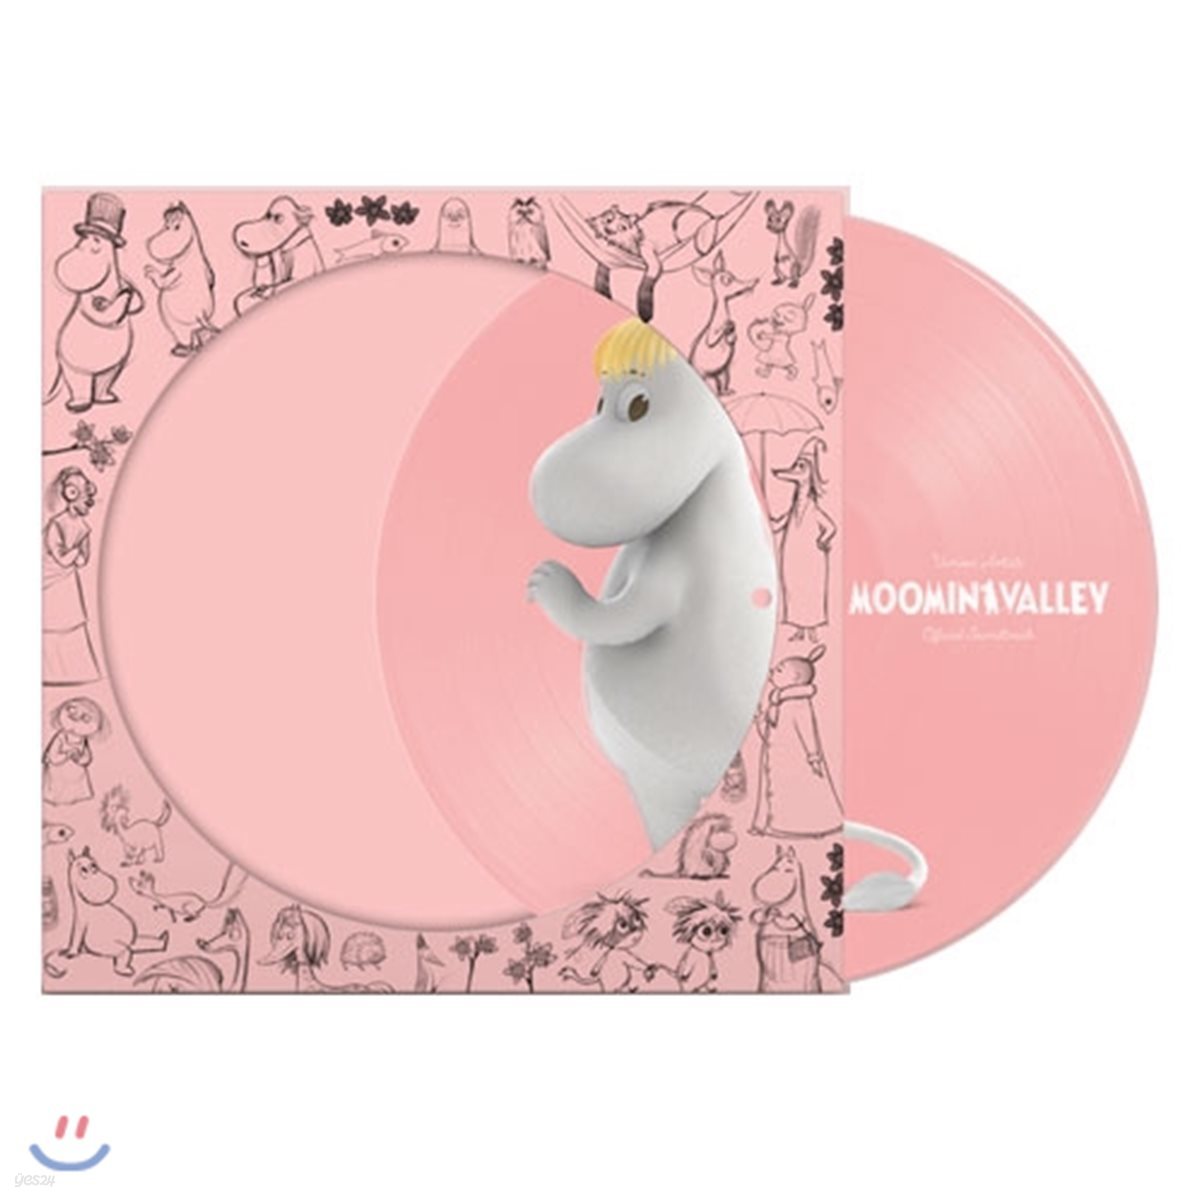 무민 밸리 애니메이션 음악 (Moominvalley OST) [스노크 메이든 픽쳐 디스크 LP]